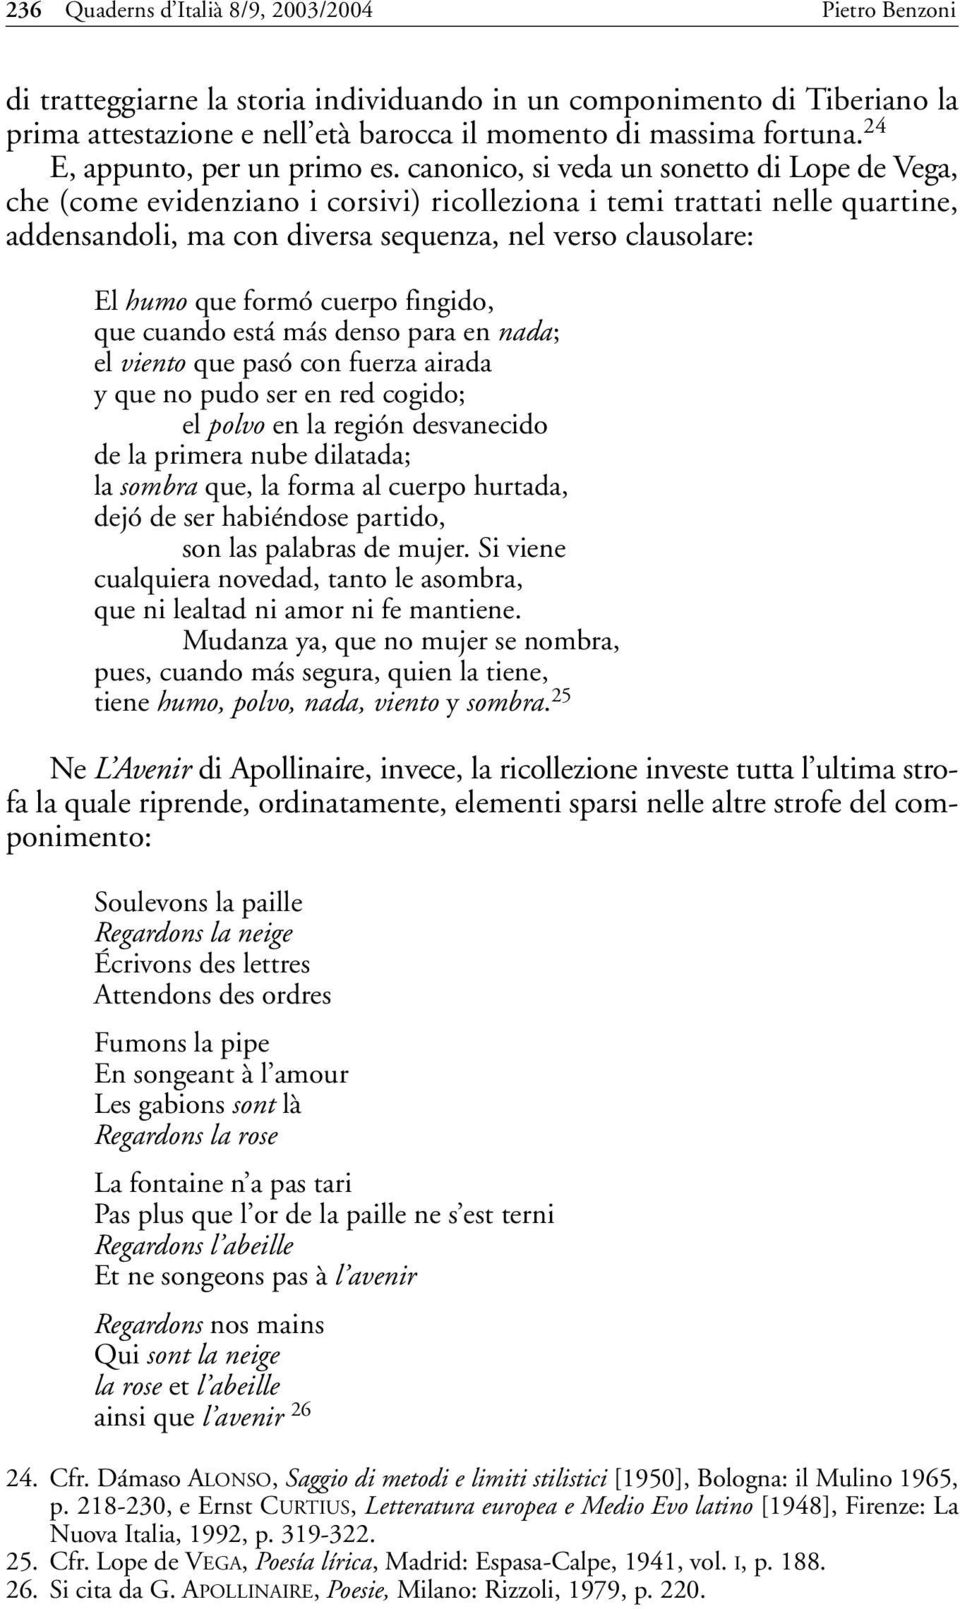 canonico, si veda un sonetto di Lope de Vega, che (come evidenziano i corsivi) ricolleziona i temi trattati nelle quartine, addensandoli, ma con diversa sequenza, nel verso clausolare: El humo que